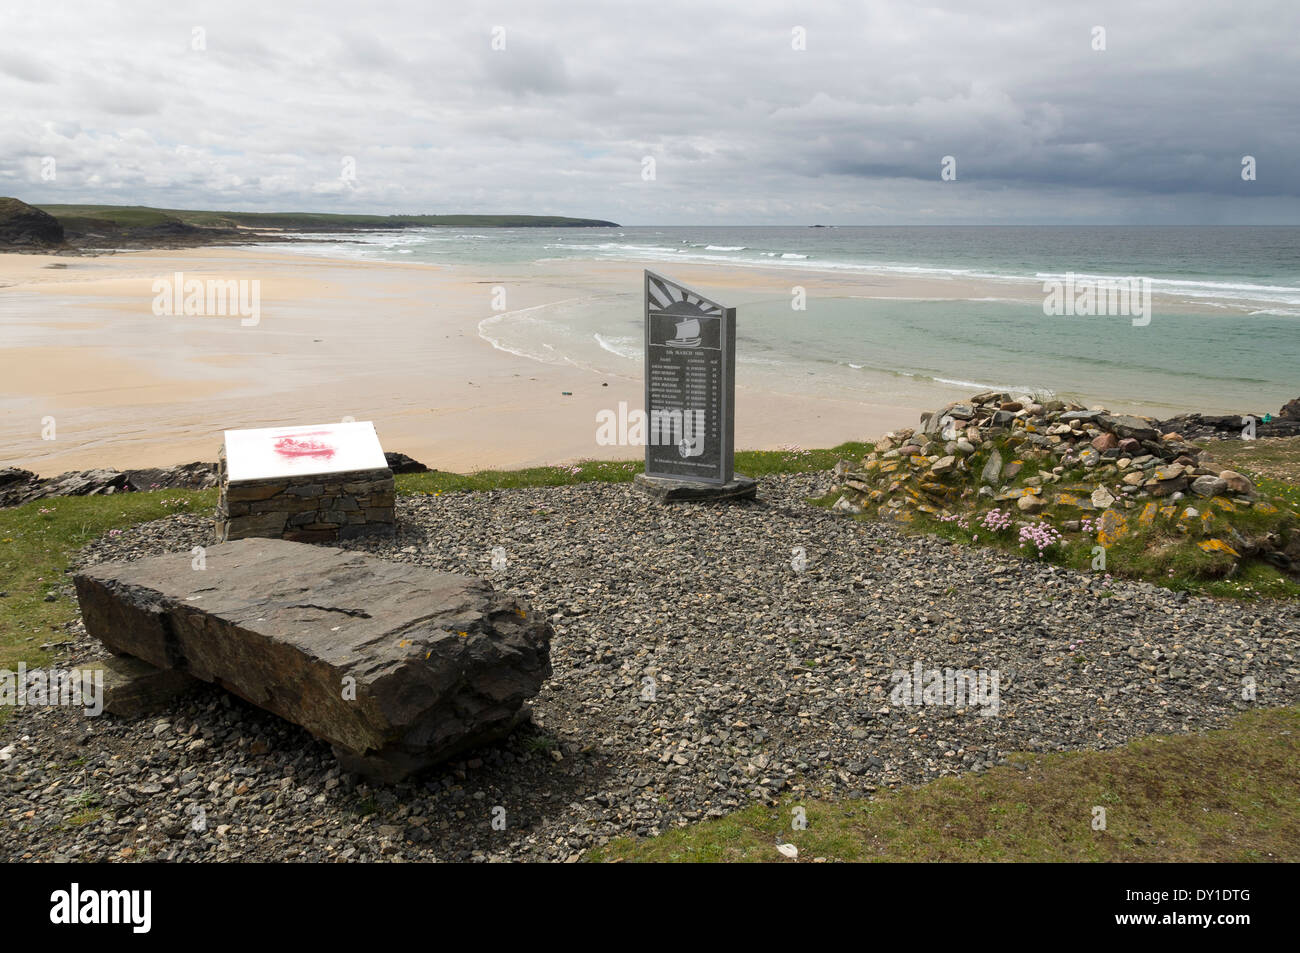 Memoriale al Cunndal annegamento nel marzo 1885, a Traigh Shanndaigh beach, vicino Eoropie, Lewis, Western Isles, Scotland, Regno Unito Foto Stock